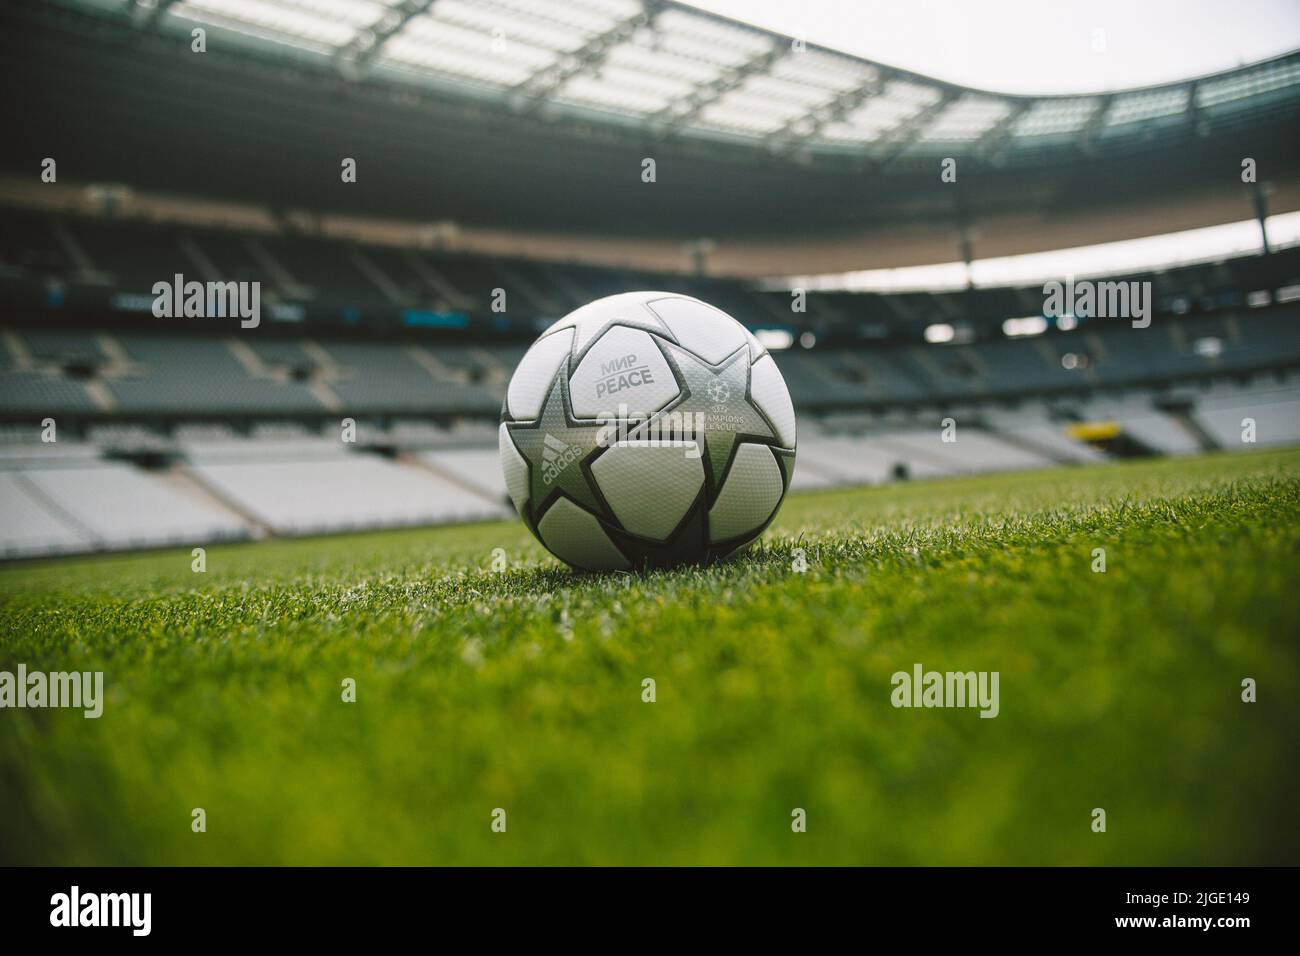 Offizieller Spielball von Adidas für das Finale der UEFA Champions League 2022 in Stade de France, Paris, Frankreich. Eingeschrieben mit den Worten ‘мир | PEACE’ Stockfoto